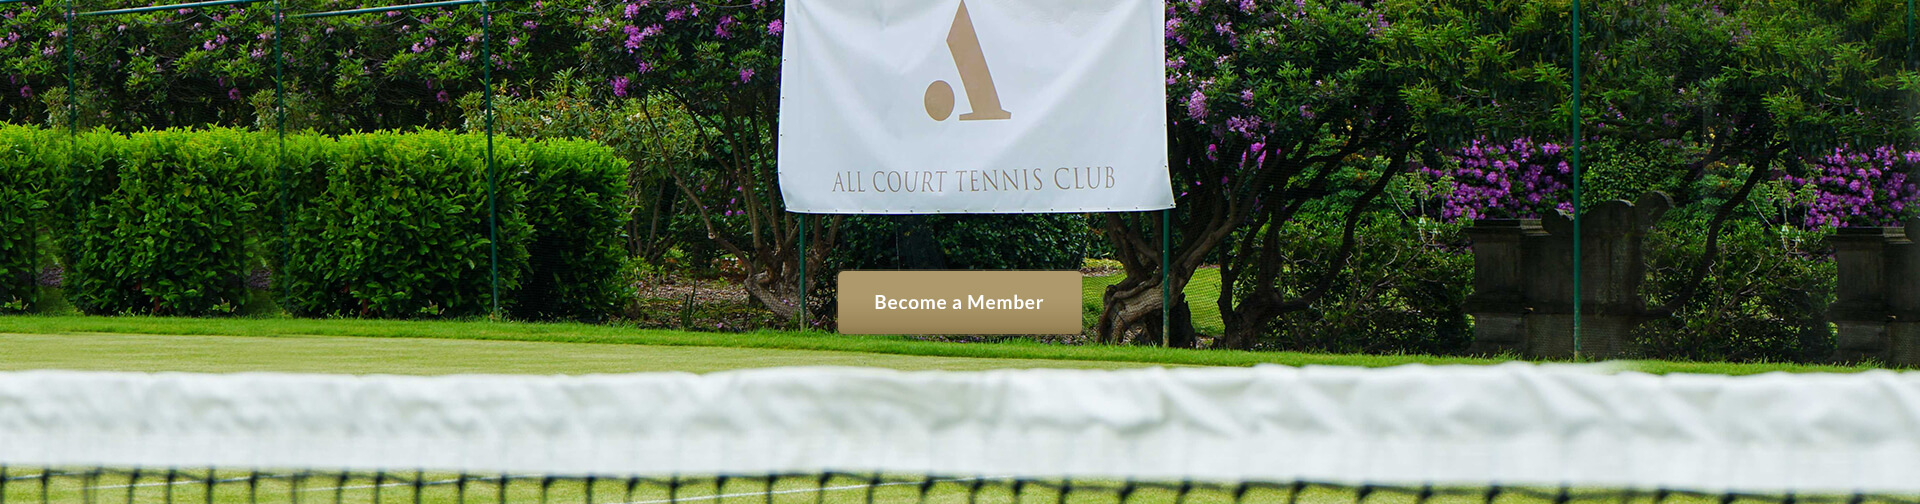 All Court Tennis Club